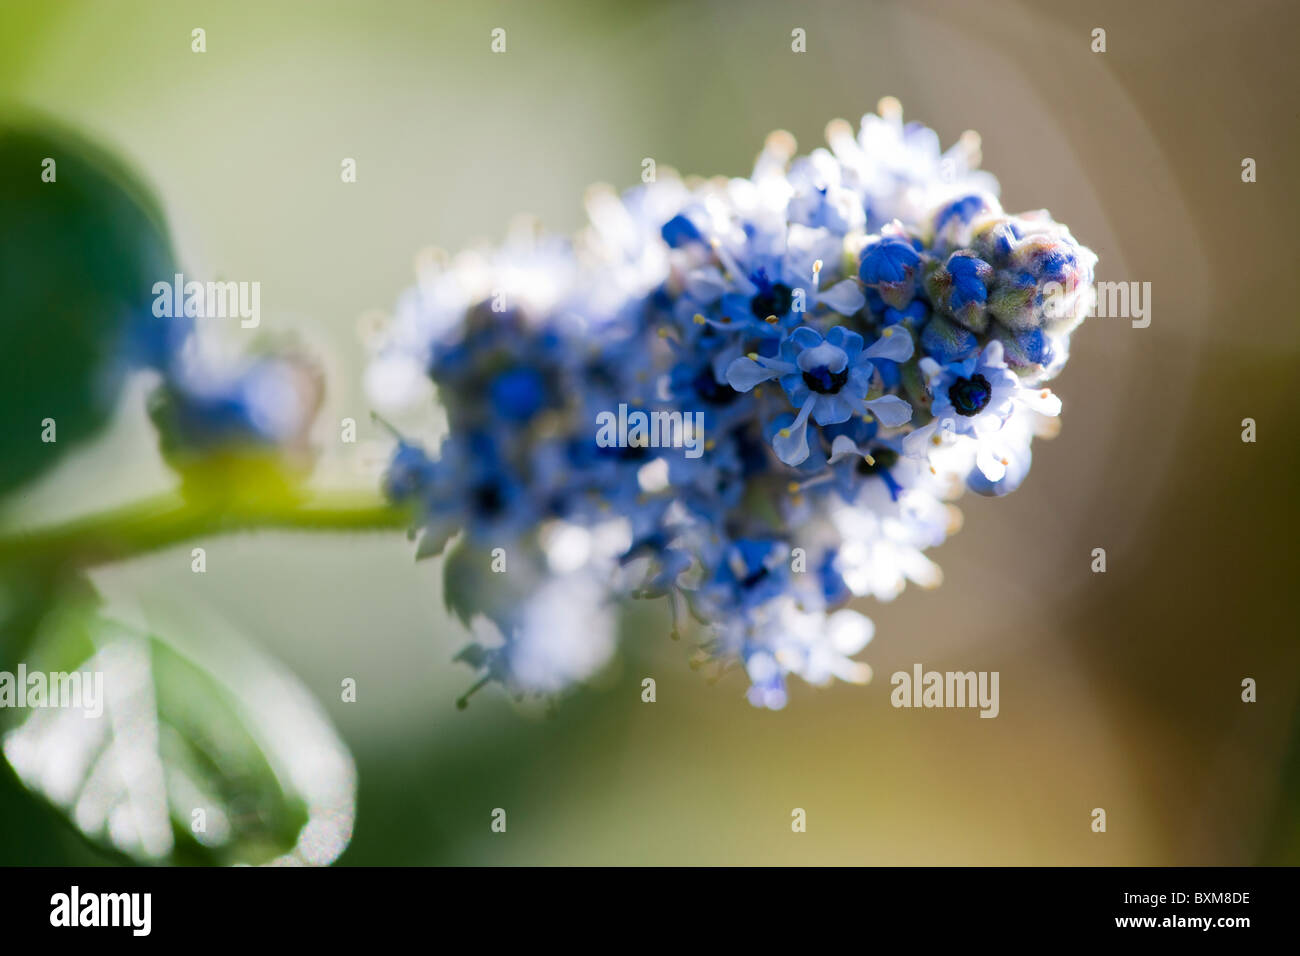 Blue ceanothus flowering shrub Stock Photo